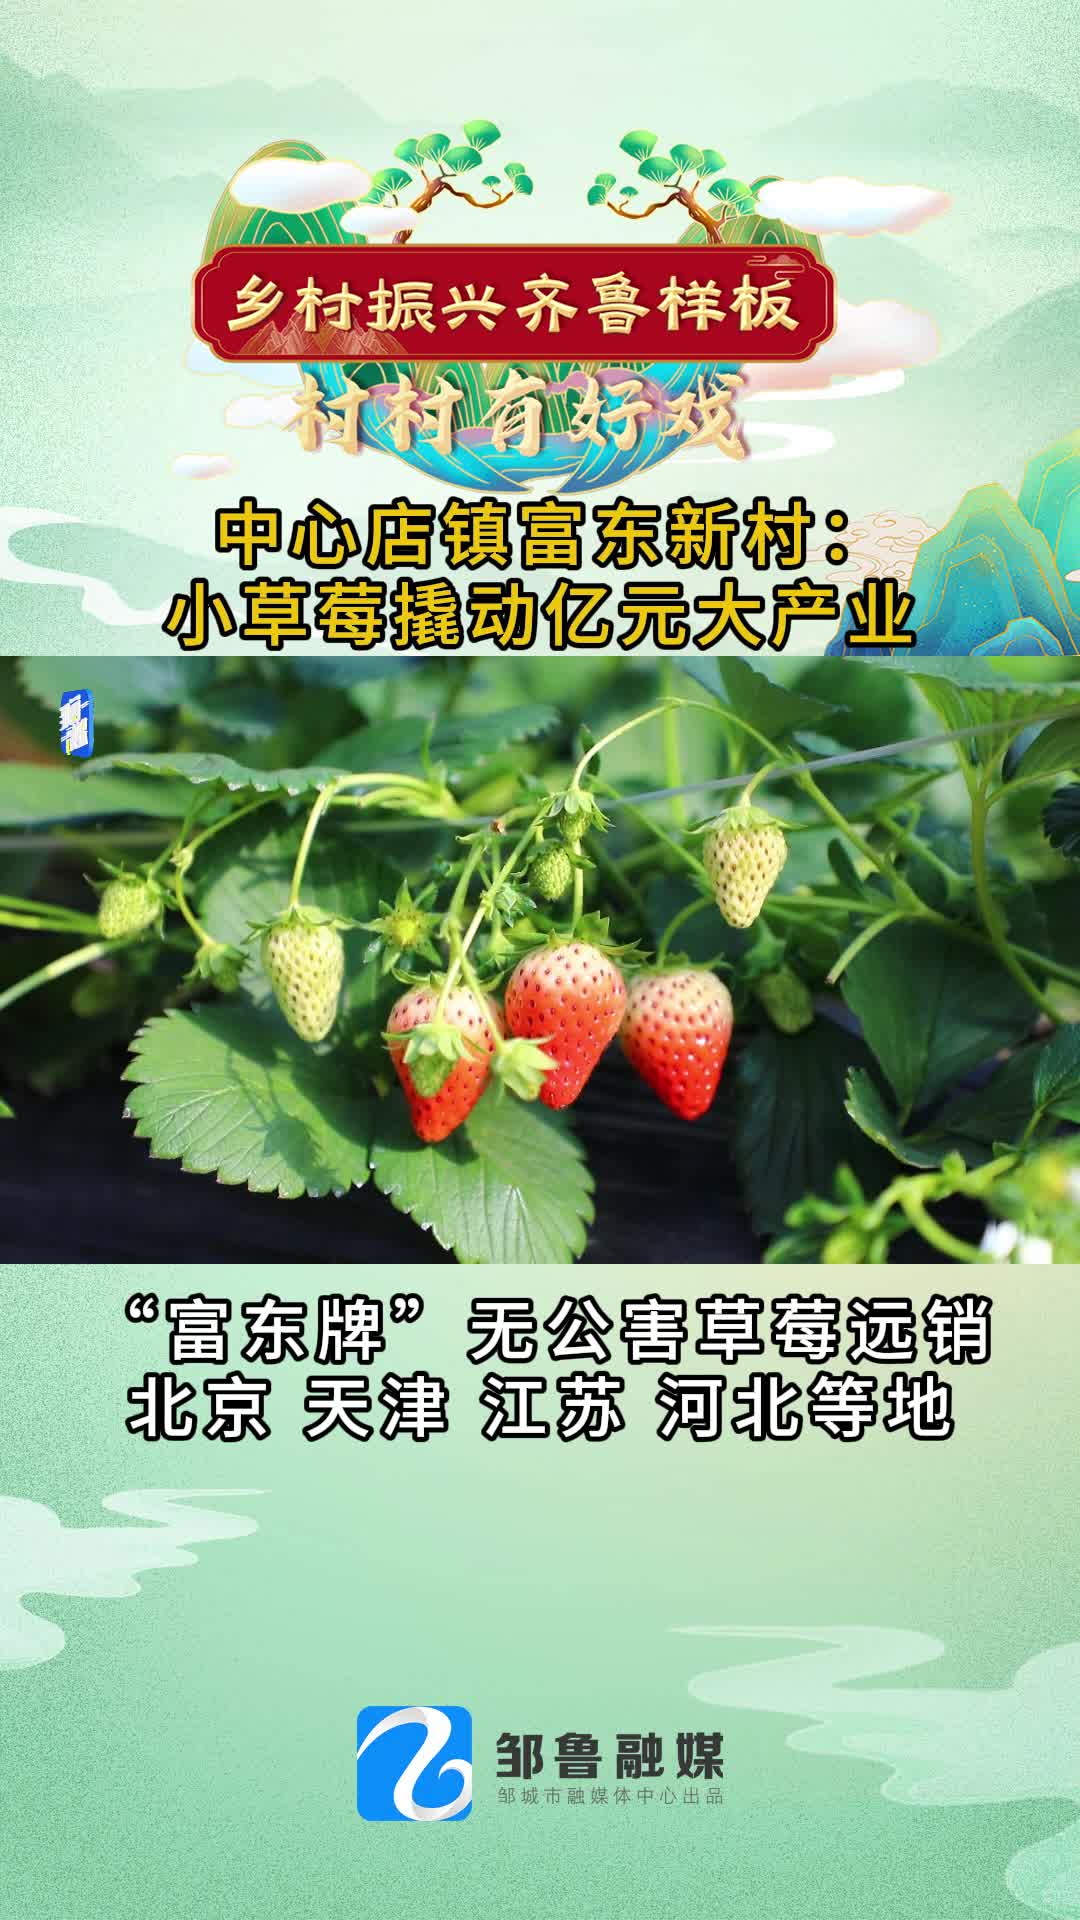 【邹视频·新闻】53秒 |中心店镇富东新村：小草莓撬动亿元大产业